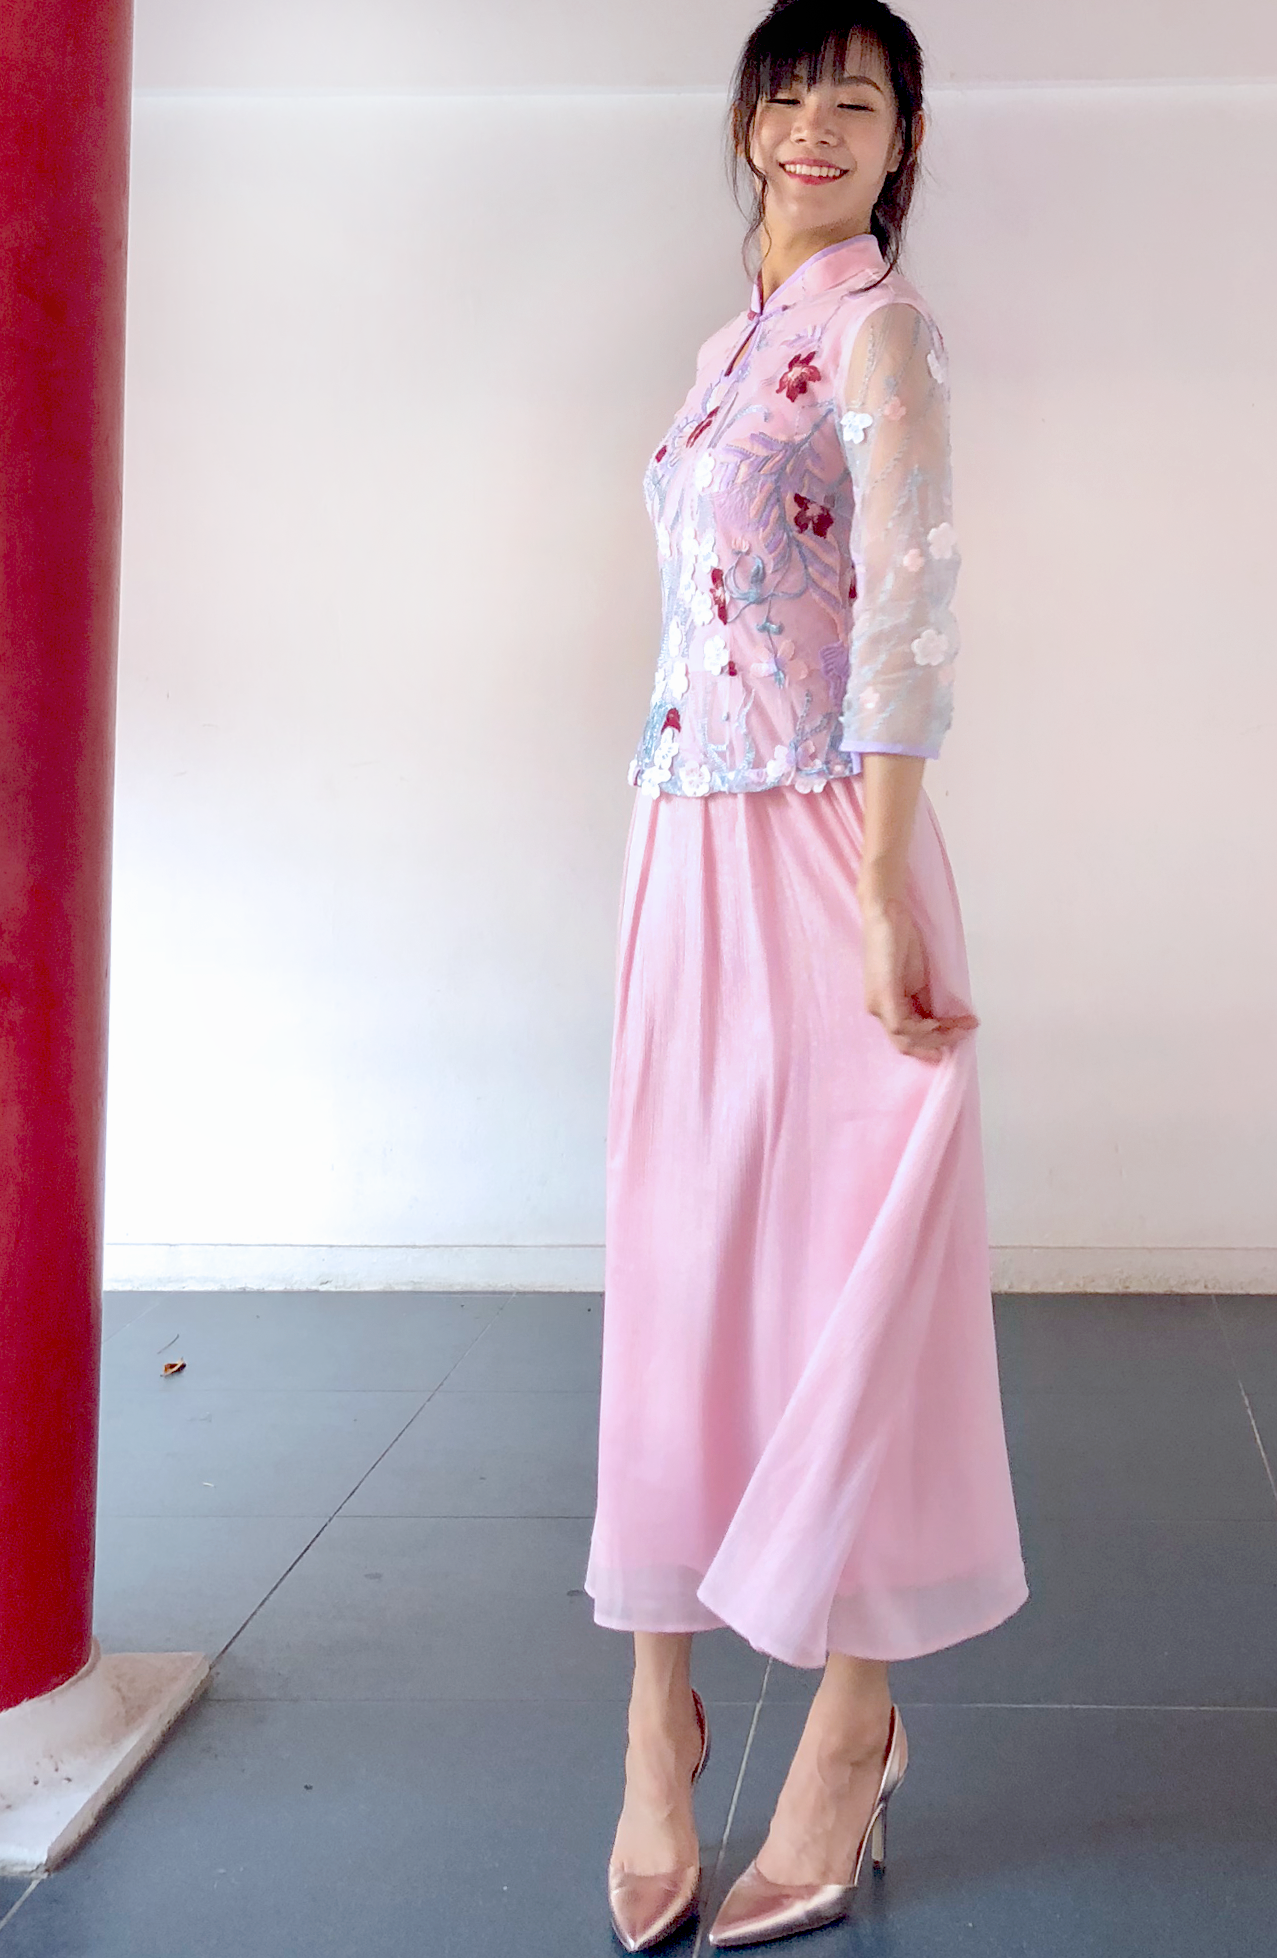 Daisy Dream Lace Cheongsam Midi Dress